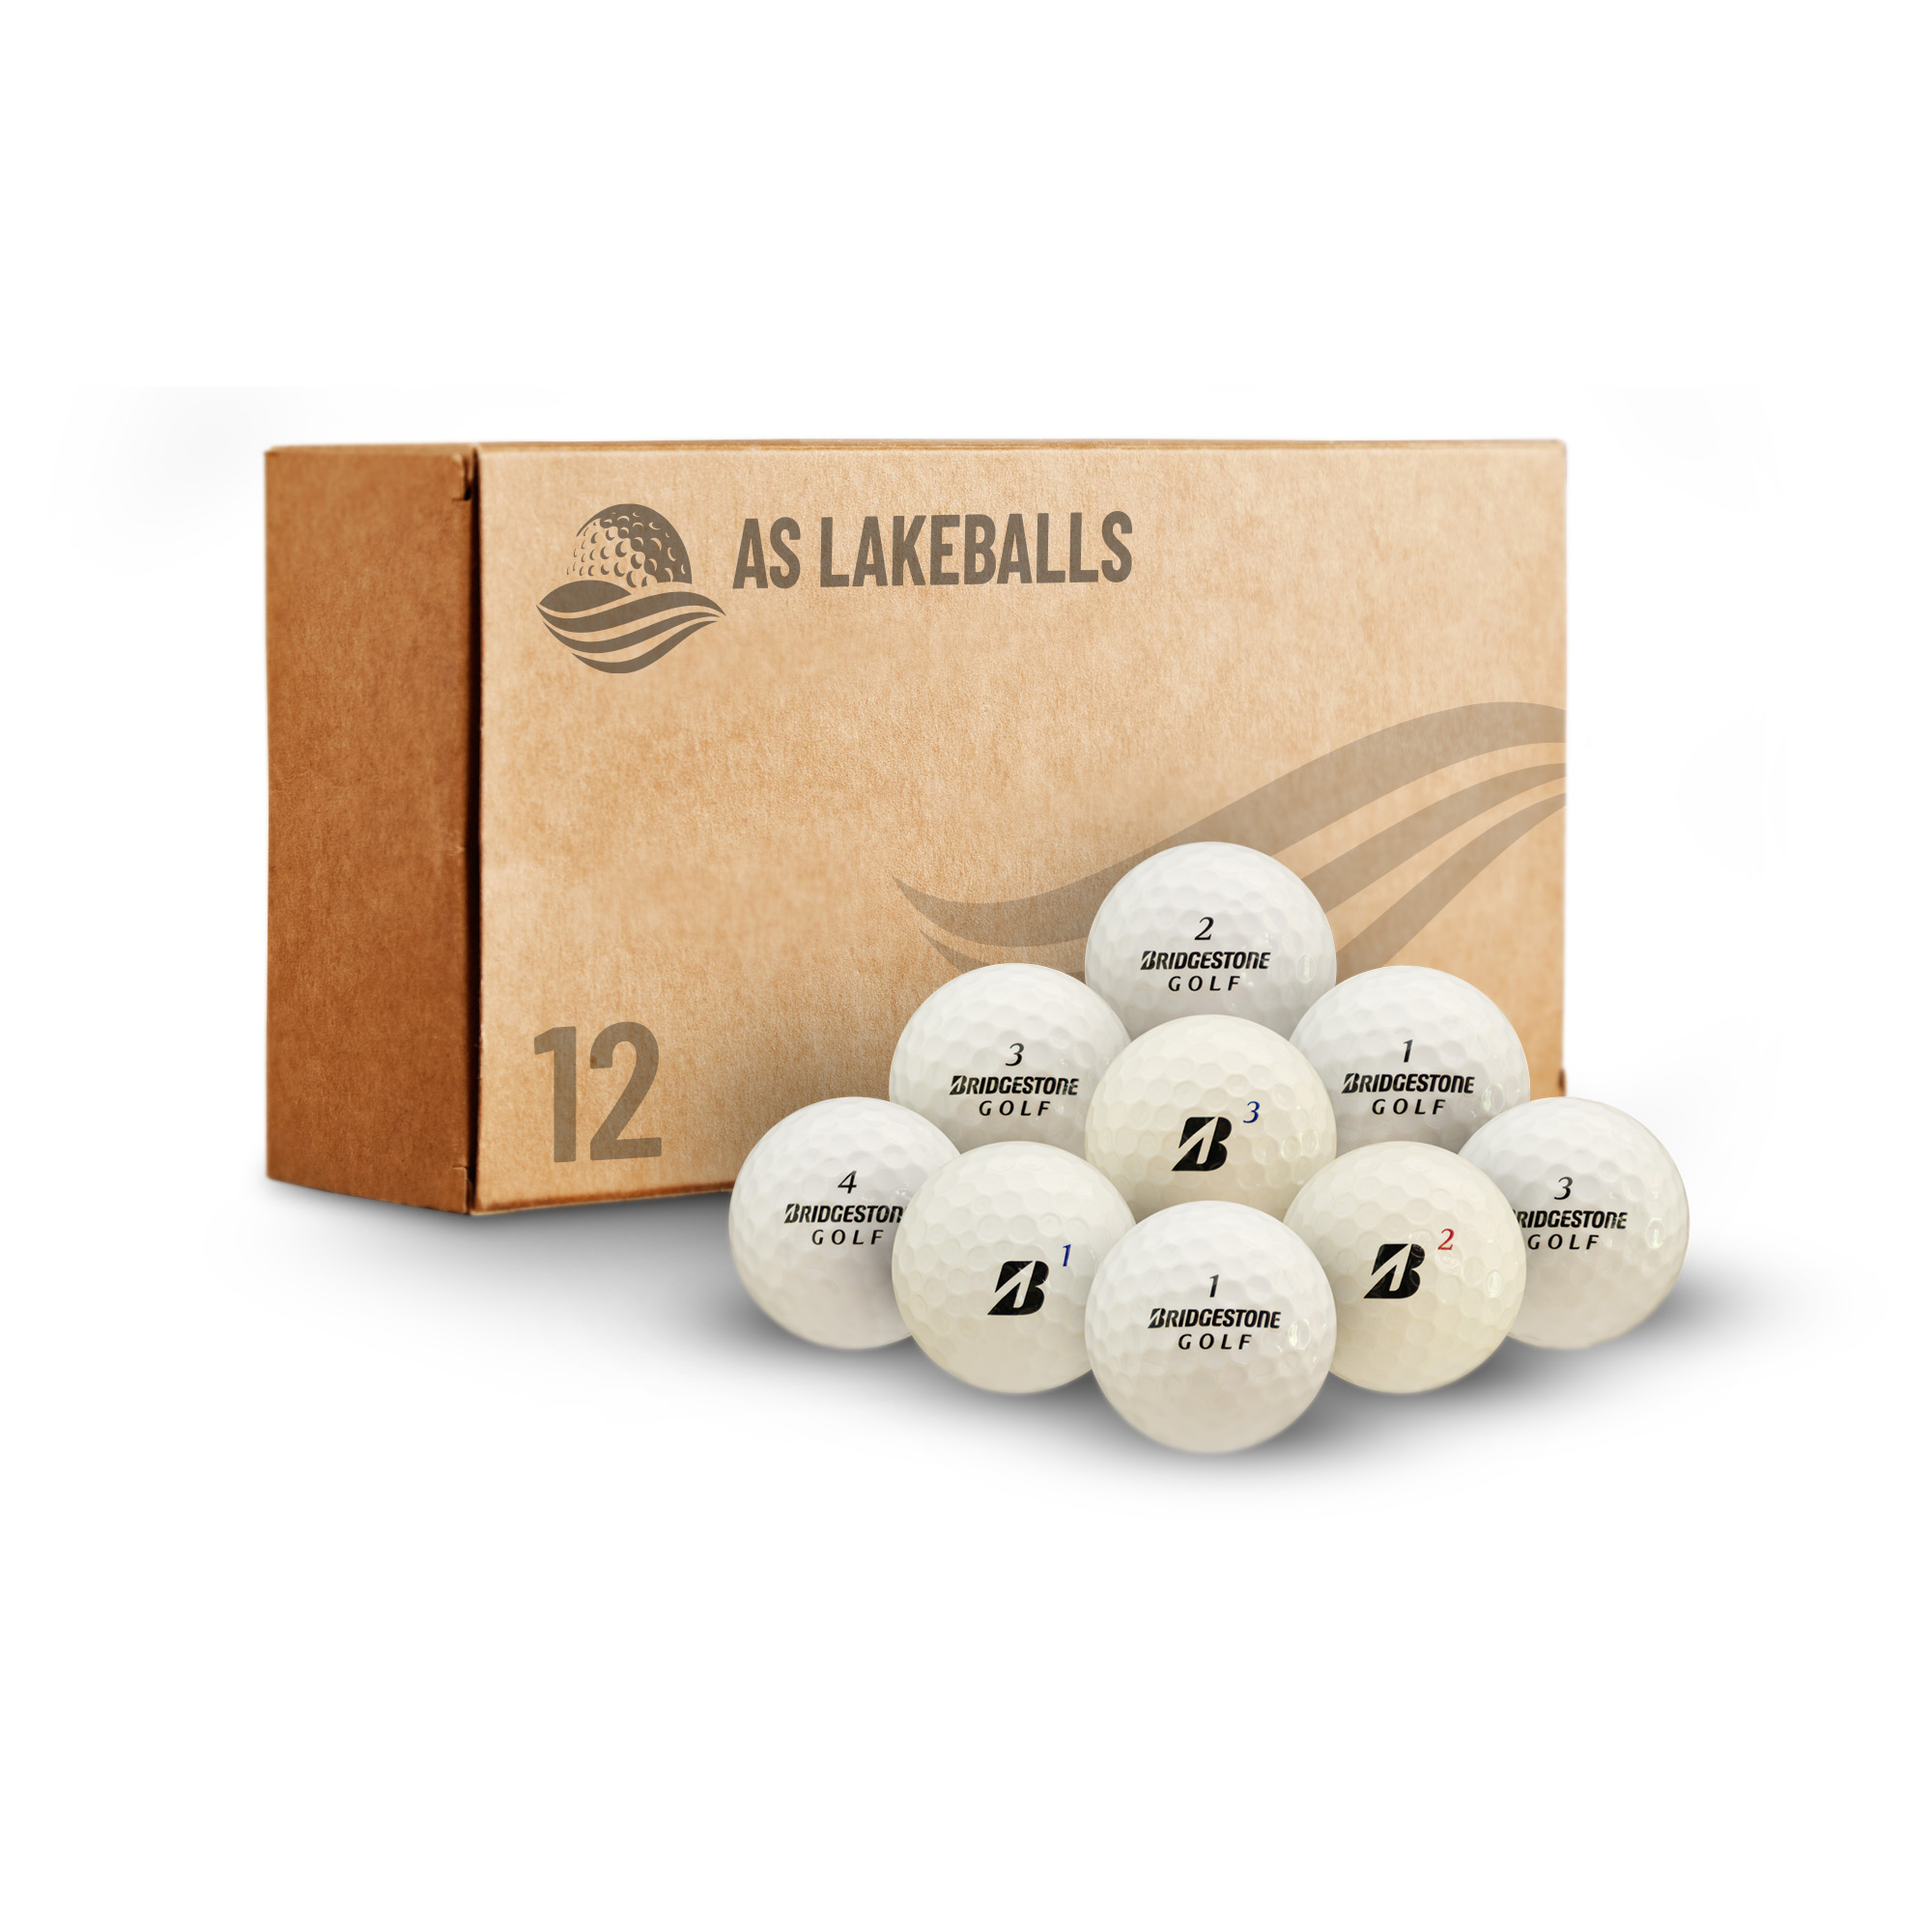 12 Stück Bridgestone Mix AAA-AA Lakeballs bei AS Lakeballs günstig kaufen